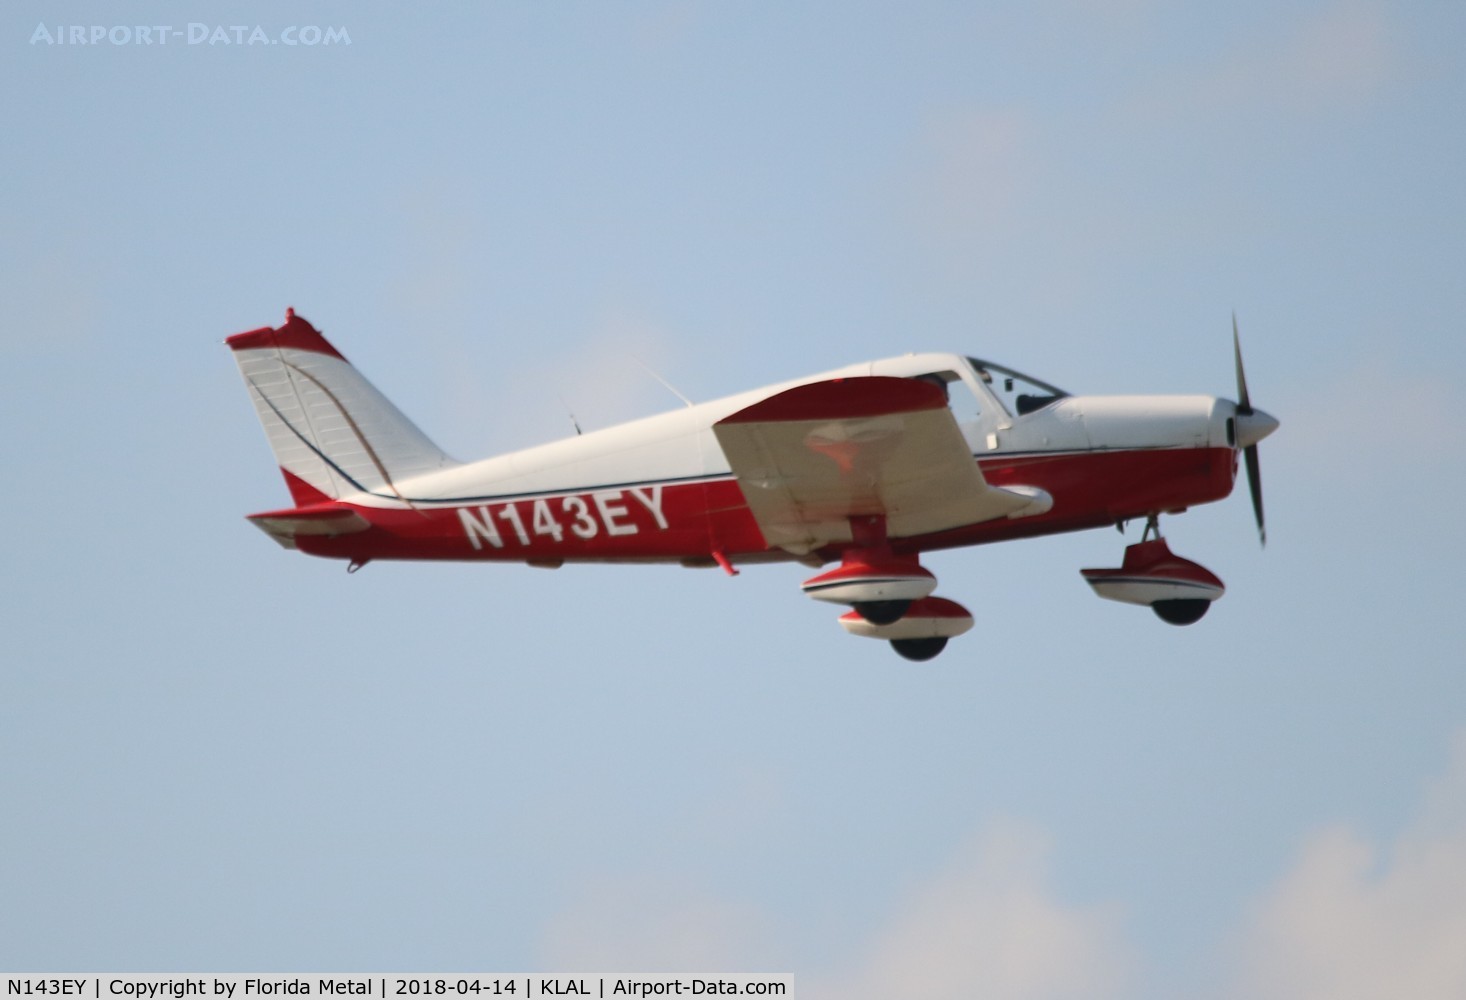 N143EY, 1968 Piper PA-28-140 C/N 28-24348, PA-28-140 zx